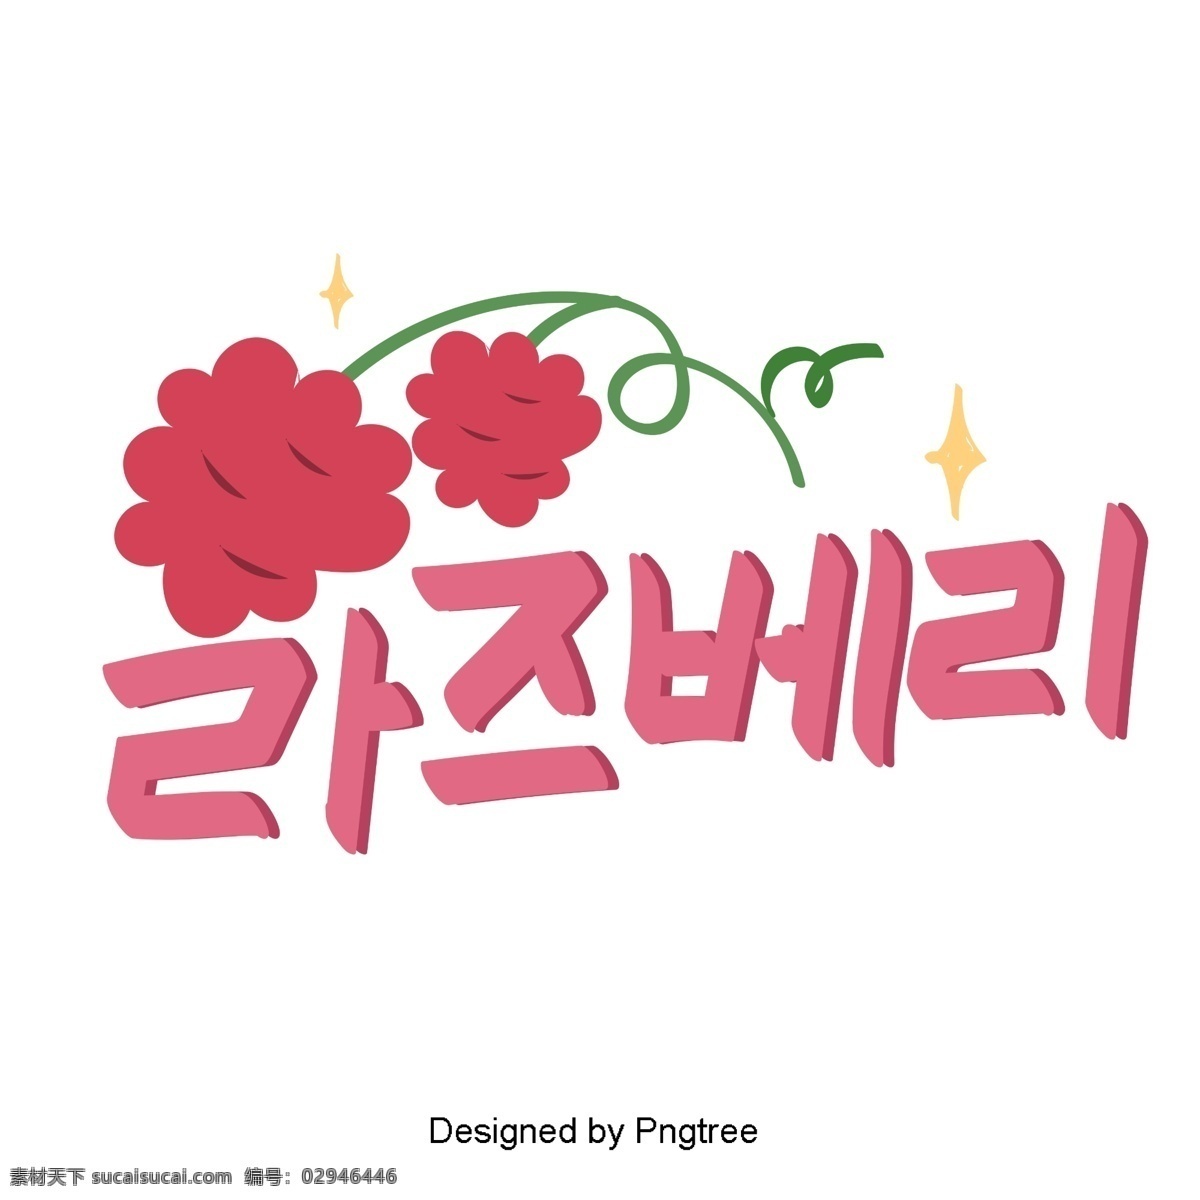 草莓 粉色 元素 手 一个 漂亮 手写 字体 风格 可爱 韩文 字形 移动支付方式 动画片 粉 水果 这是很